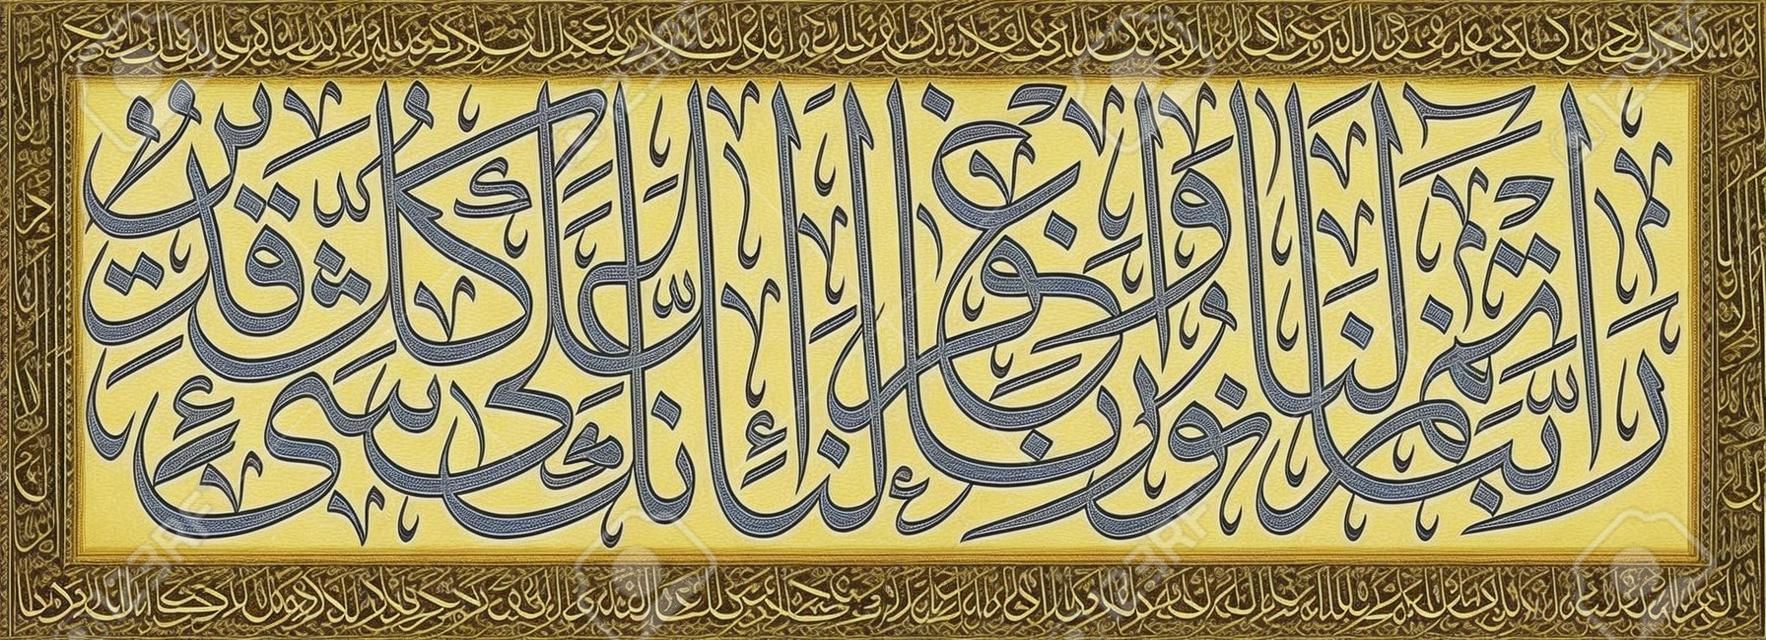 Calligrafia islamica dal Corano, Sura 66 versetto 8. -Nostro Signore Dacci piena luce e perdonaci. Tu sei capace di tutto».